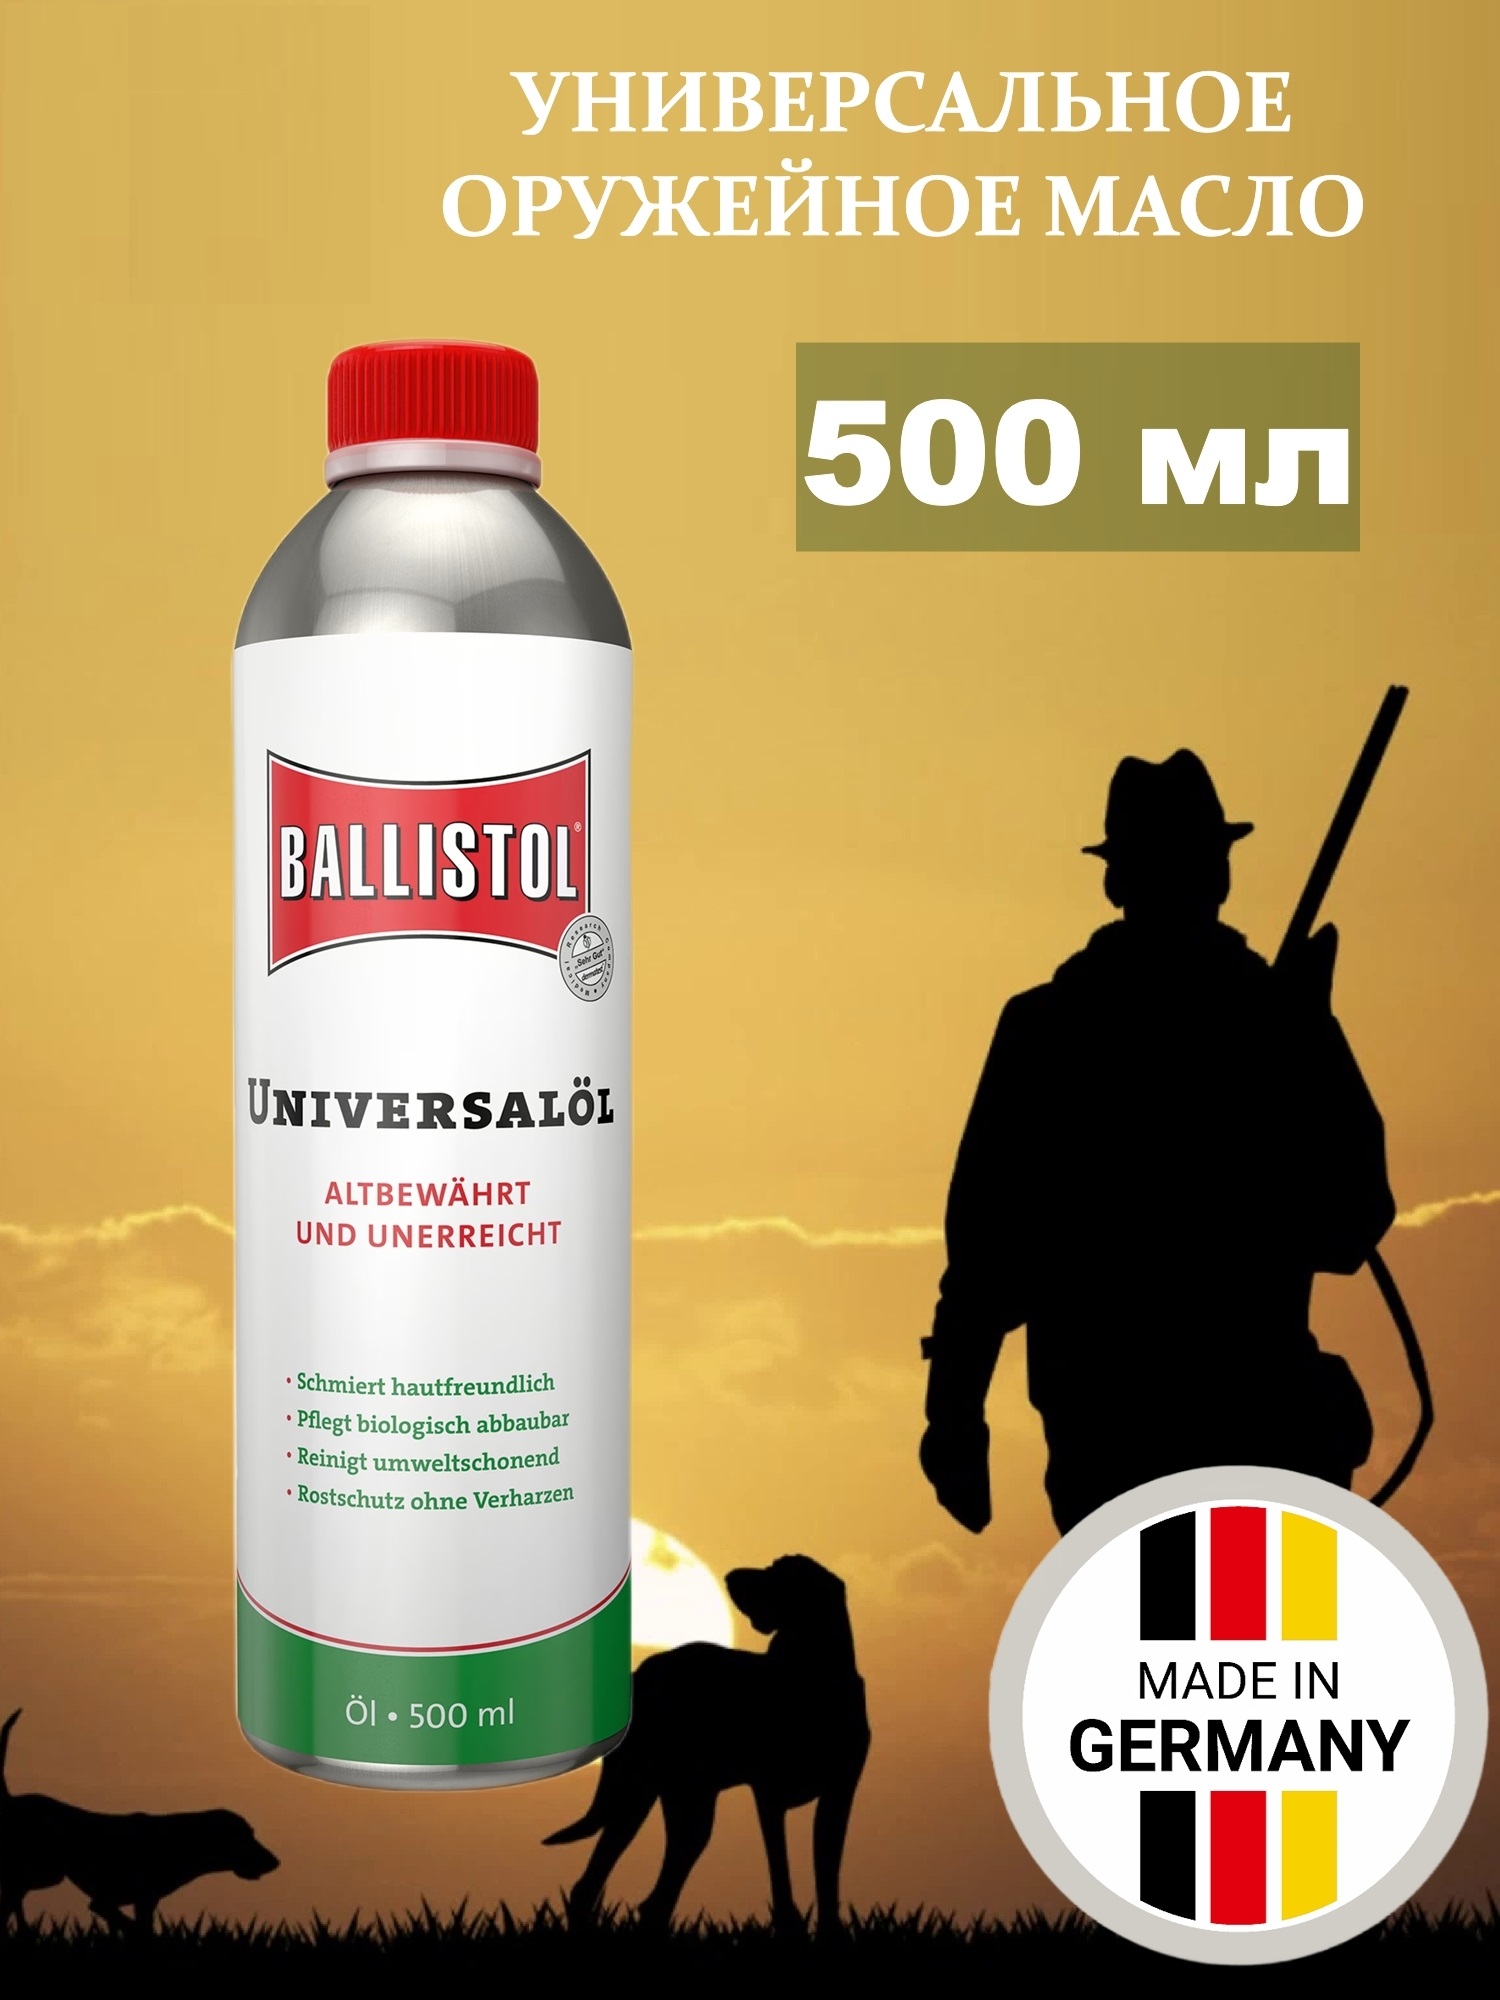 Масло оружейное универсальное Ballistol Universal oil, 500 мл, 21150